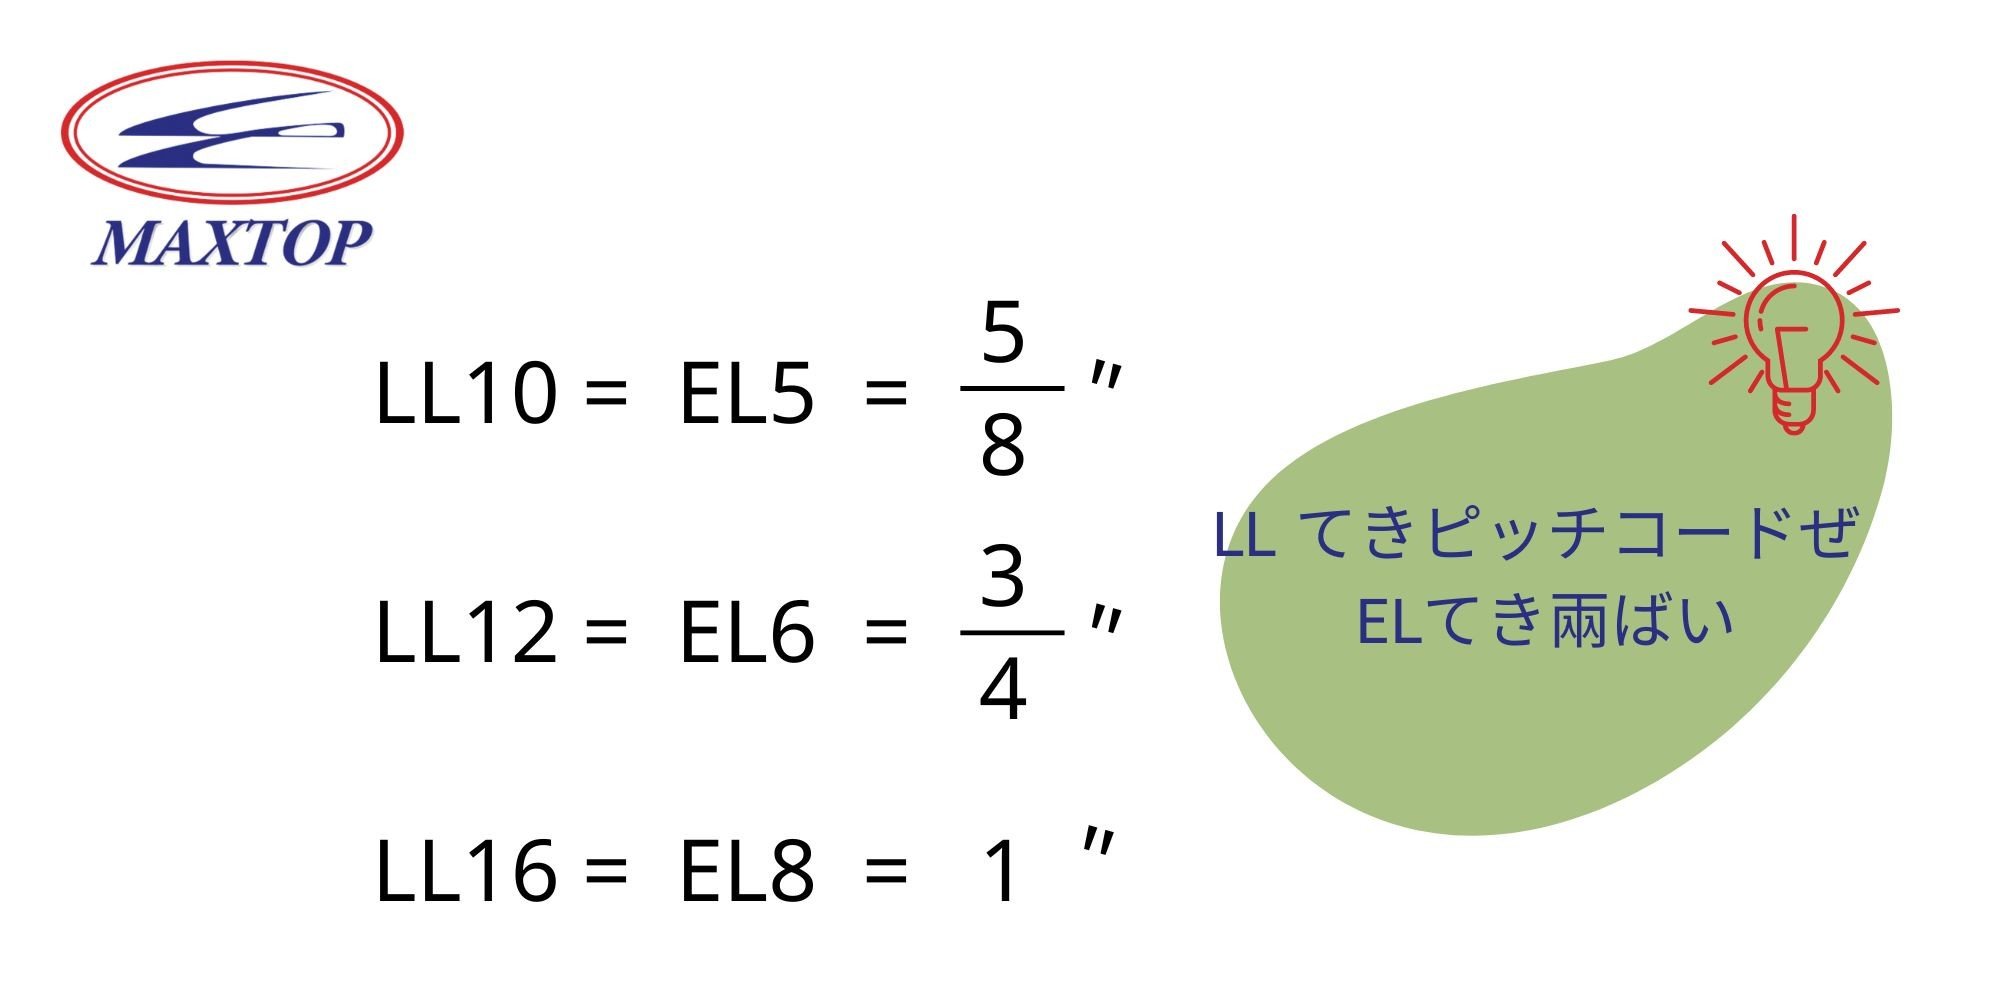 pitch rule of LL&EL(Jap.)